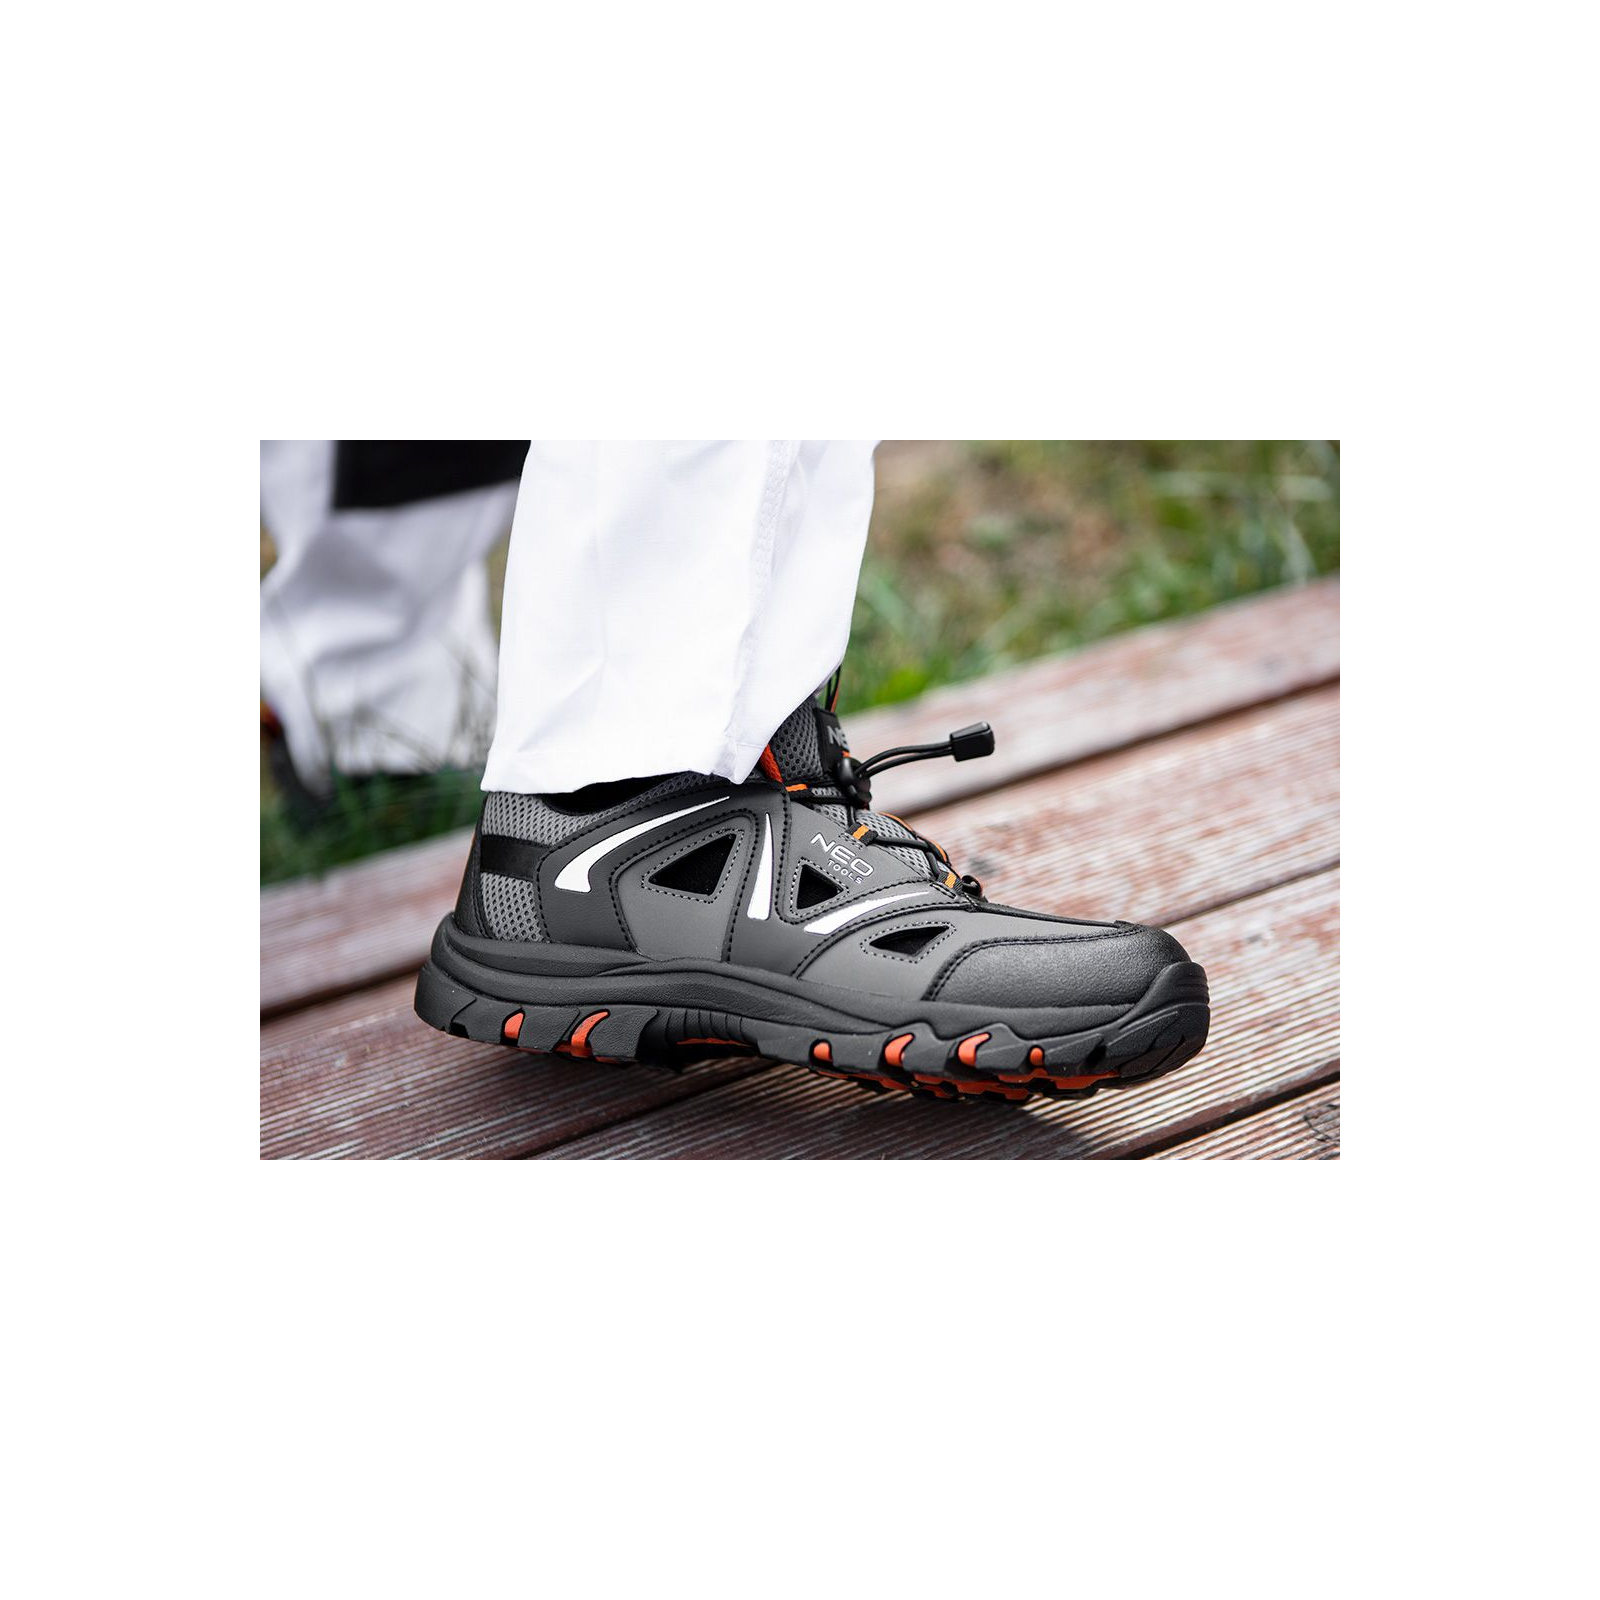 Ботинки рабочие Neo Tools кроссовки дышащие, подошва EVA, класс защиты OB, SRA, р.47 (82-728) изображение 3